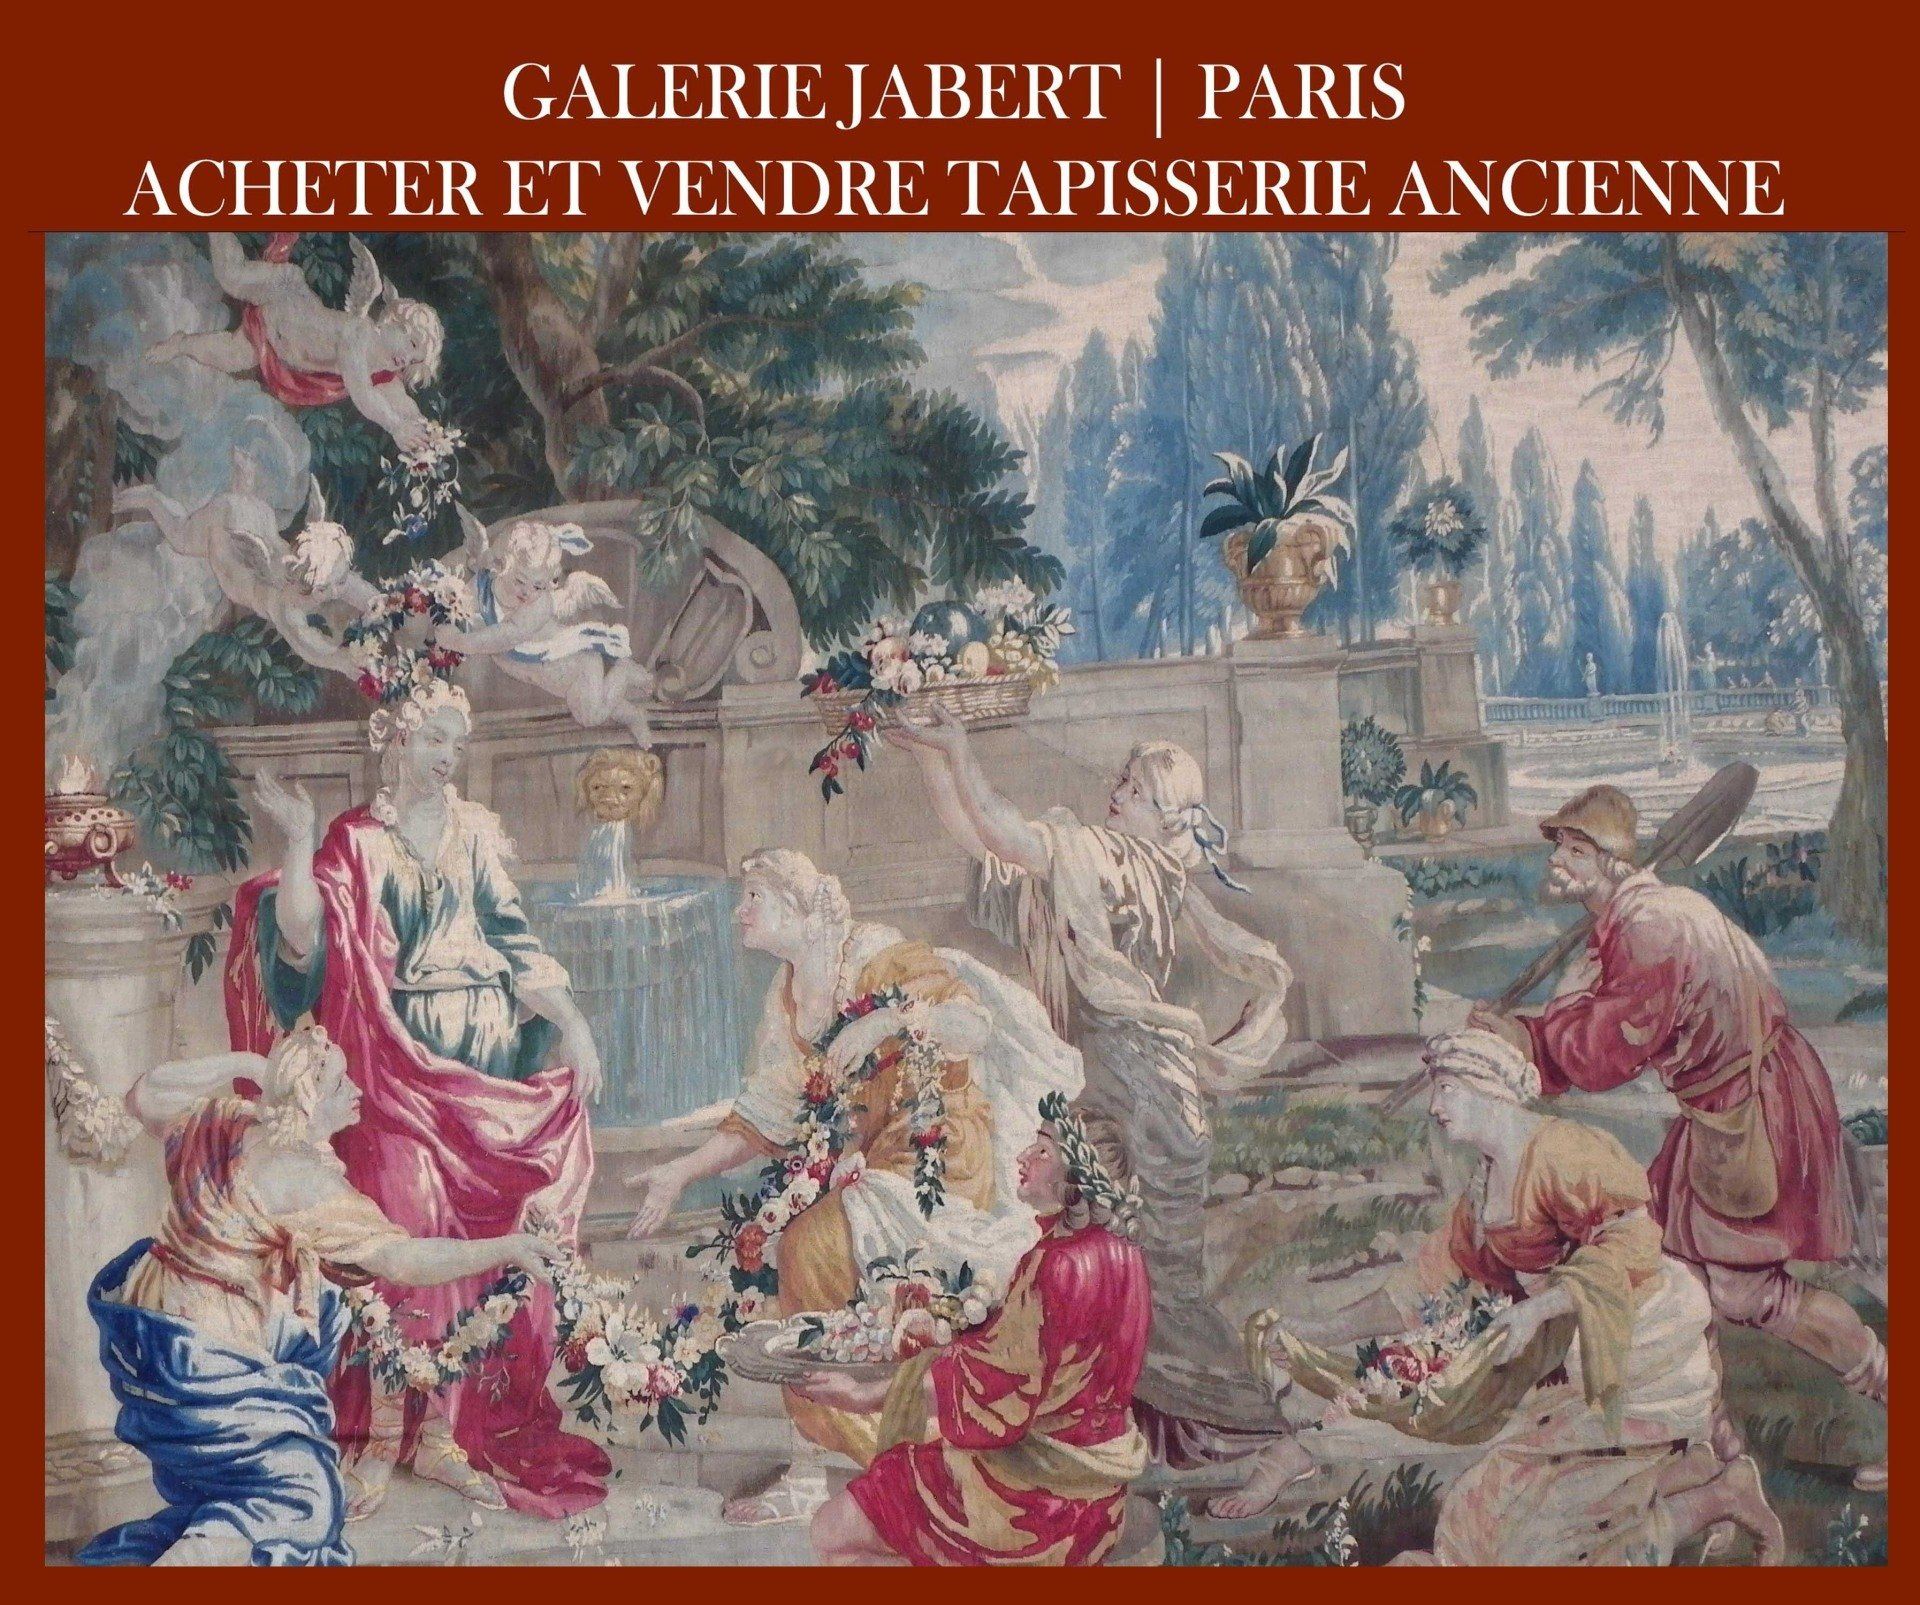 ANTIQUE AUBUSSON TAPESTRY | PARIS | GALERIE JABERT